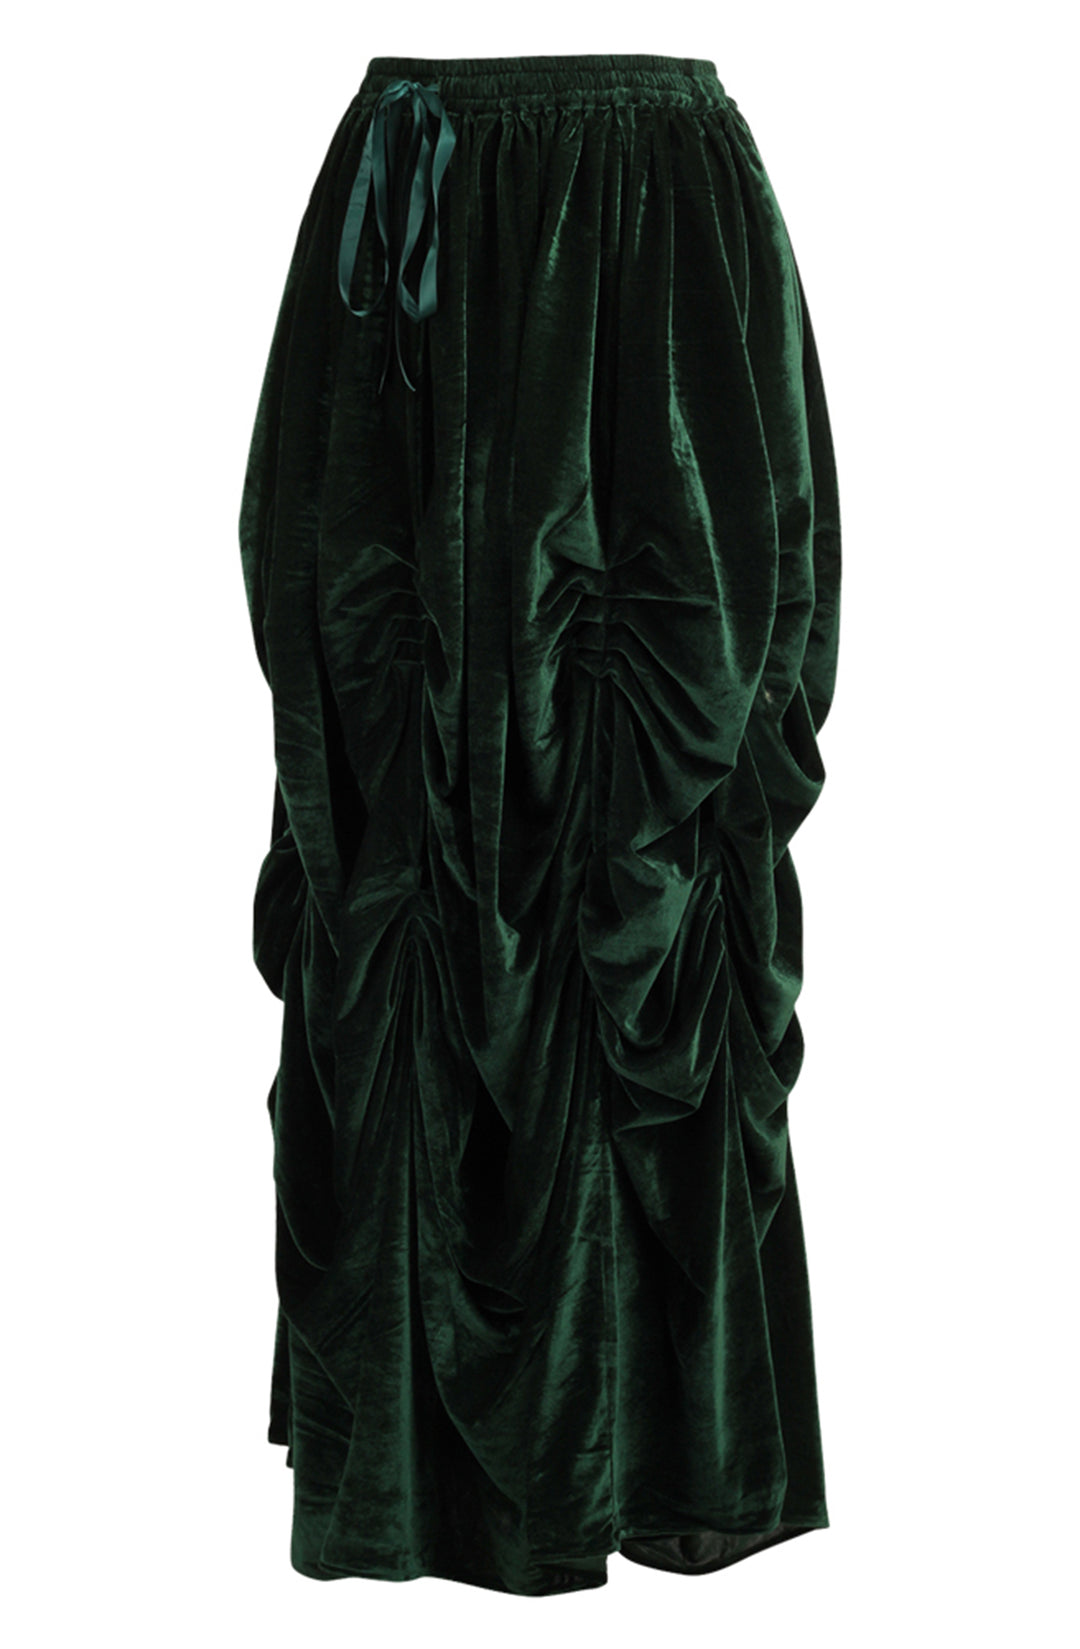 Emerald Green Velvet Ball Gown Skirt 3